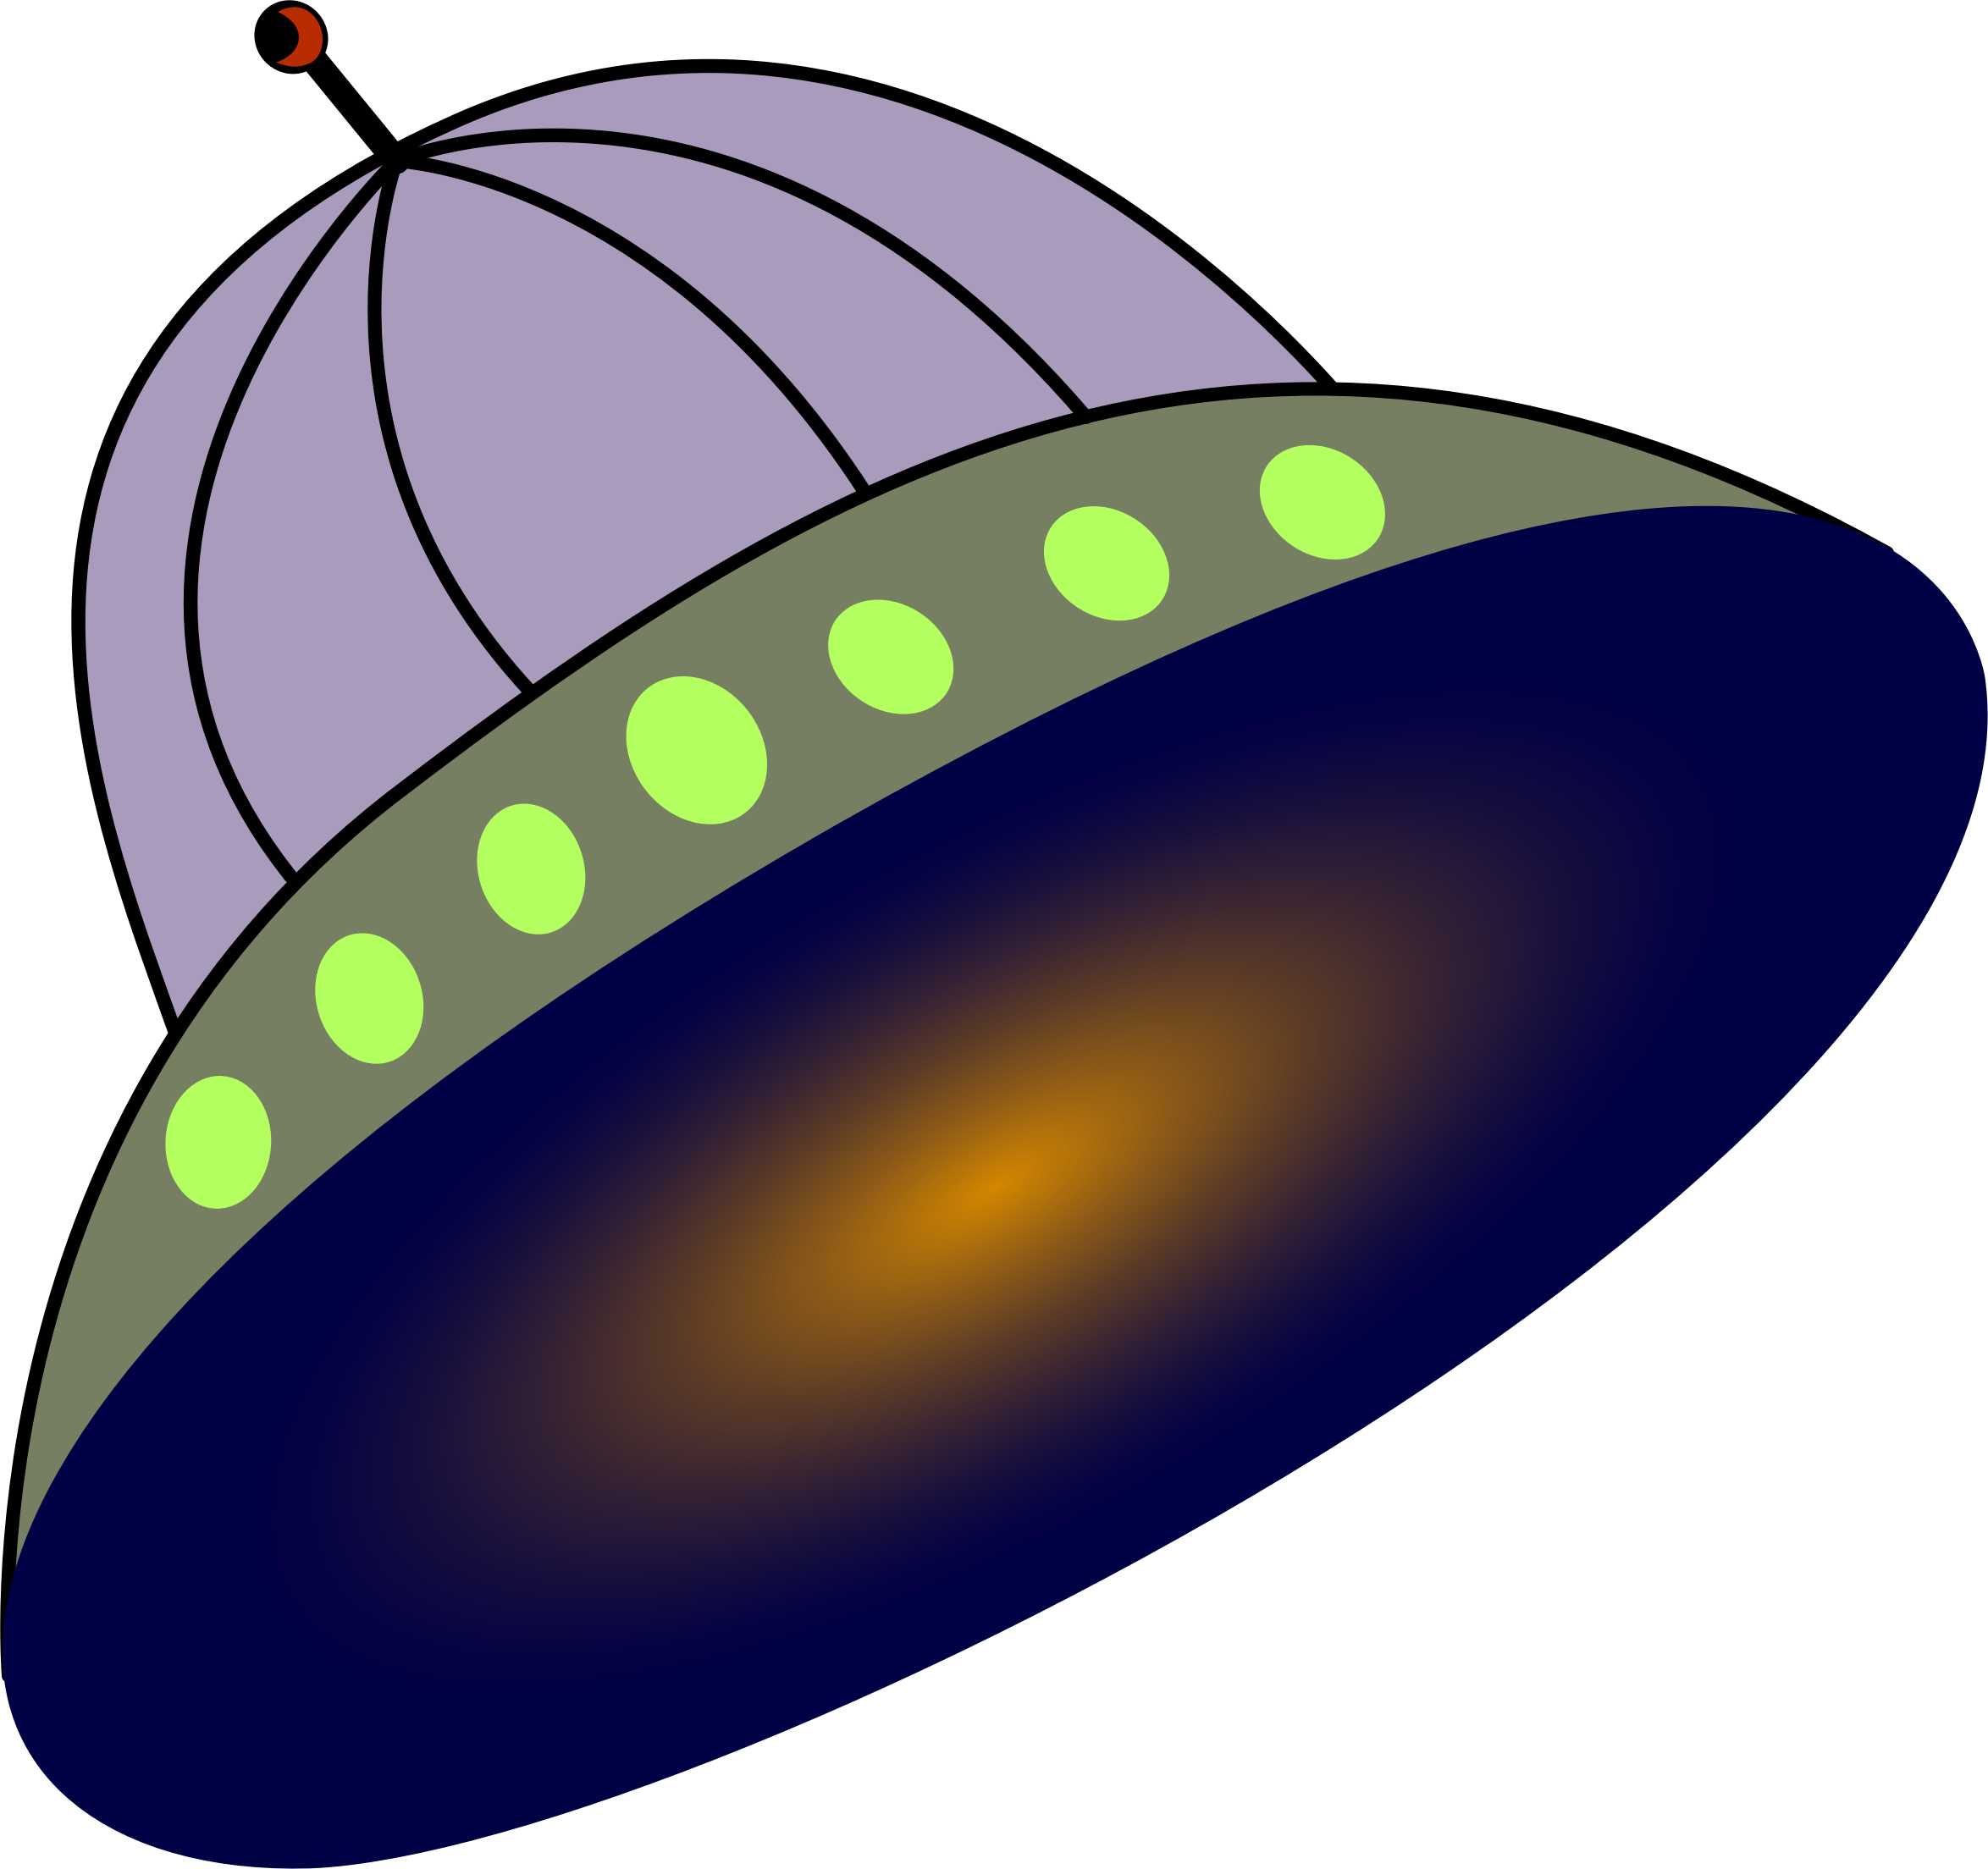 Big Image - Flying Saucer (2348x2208)